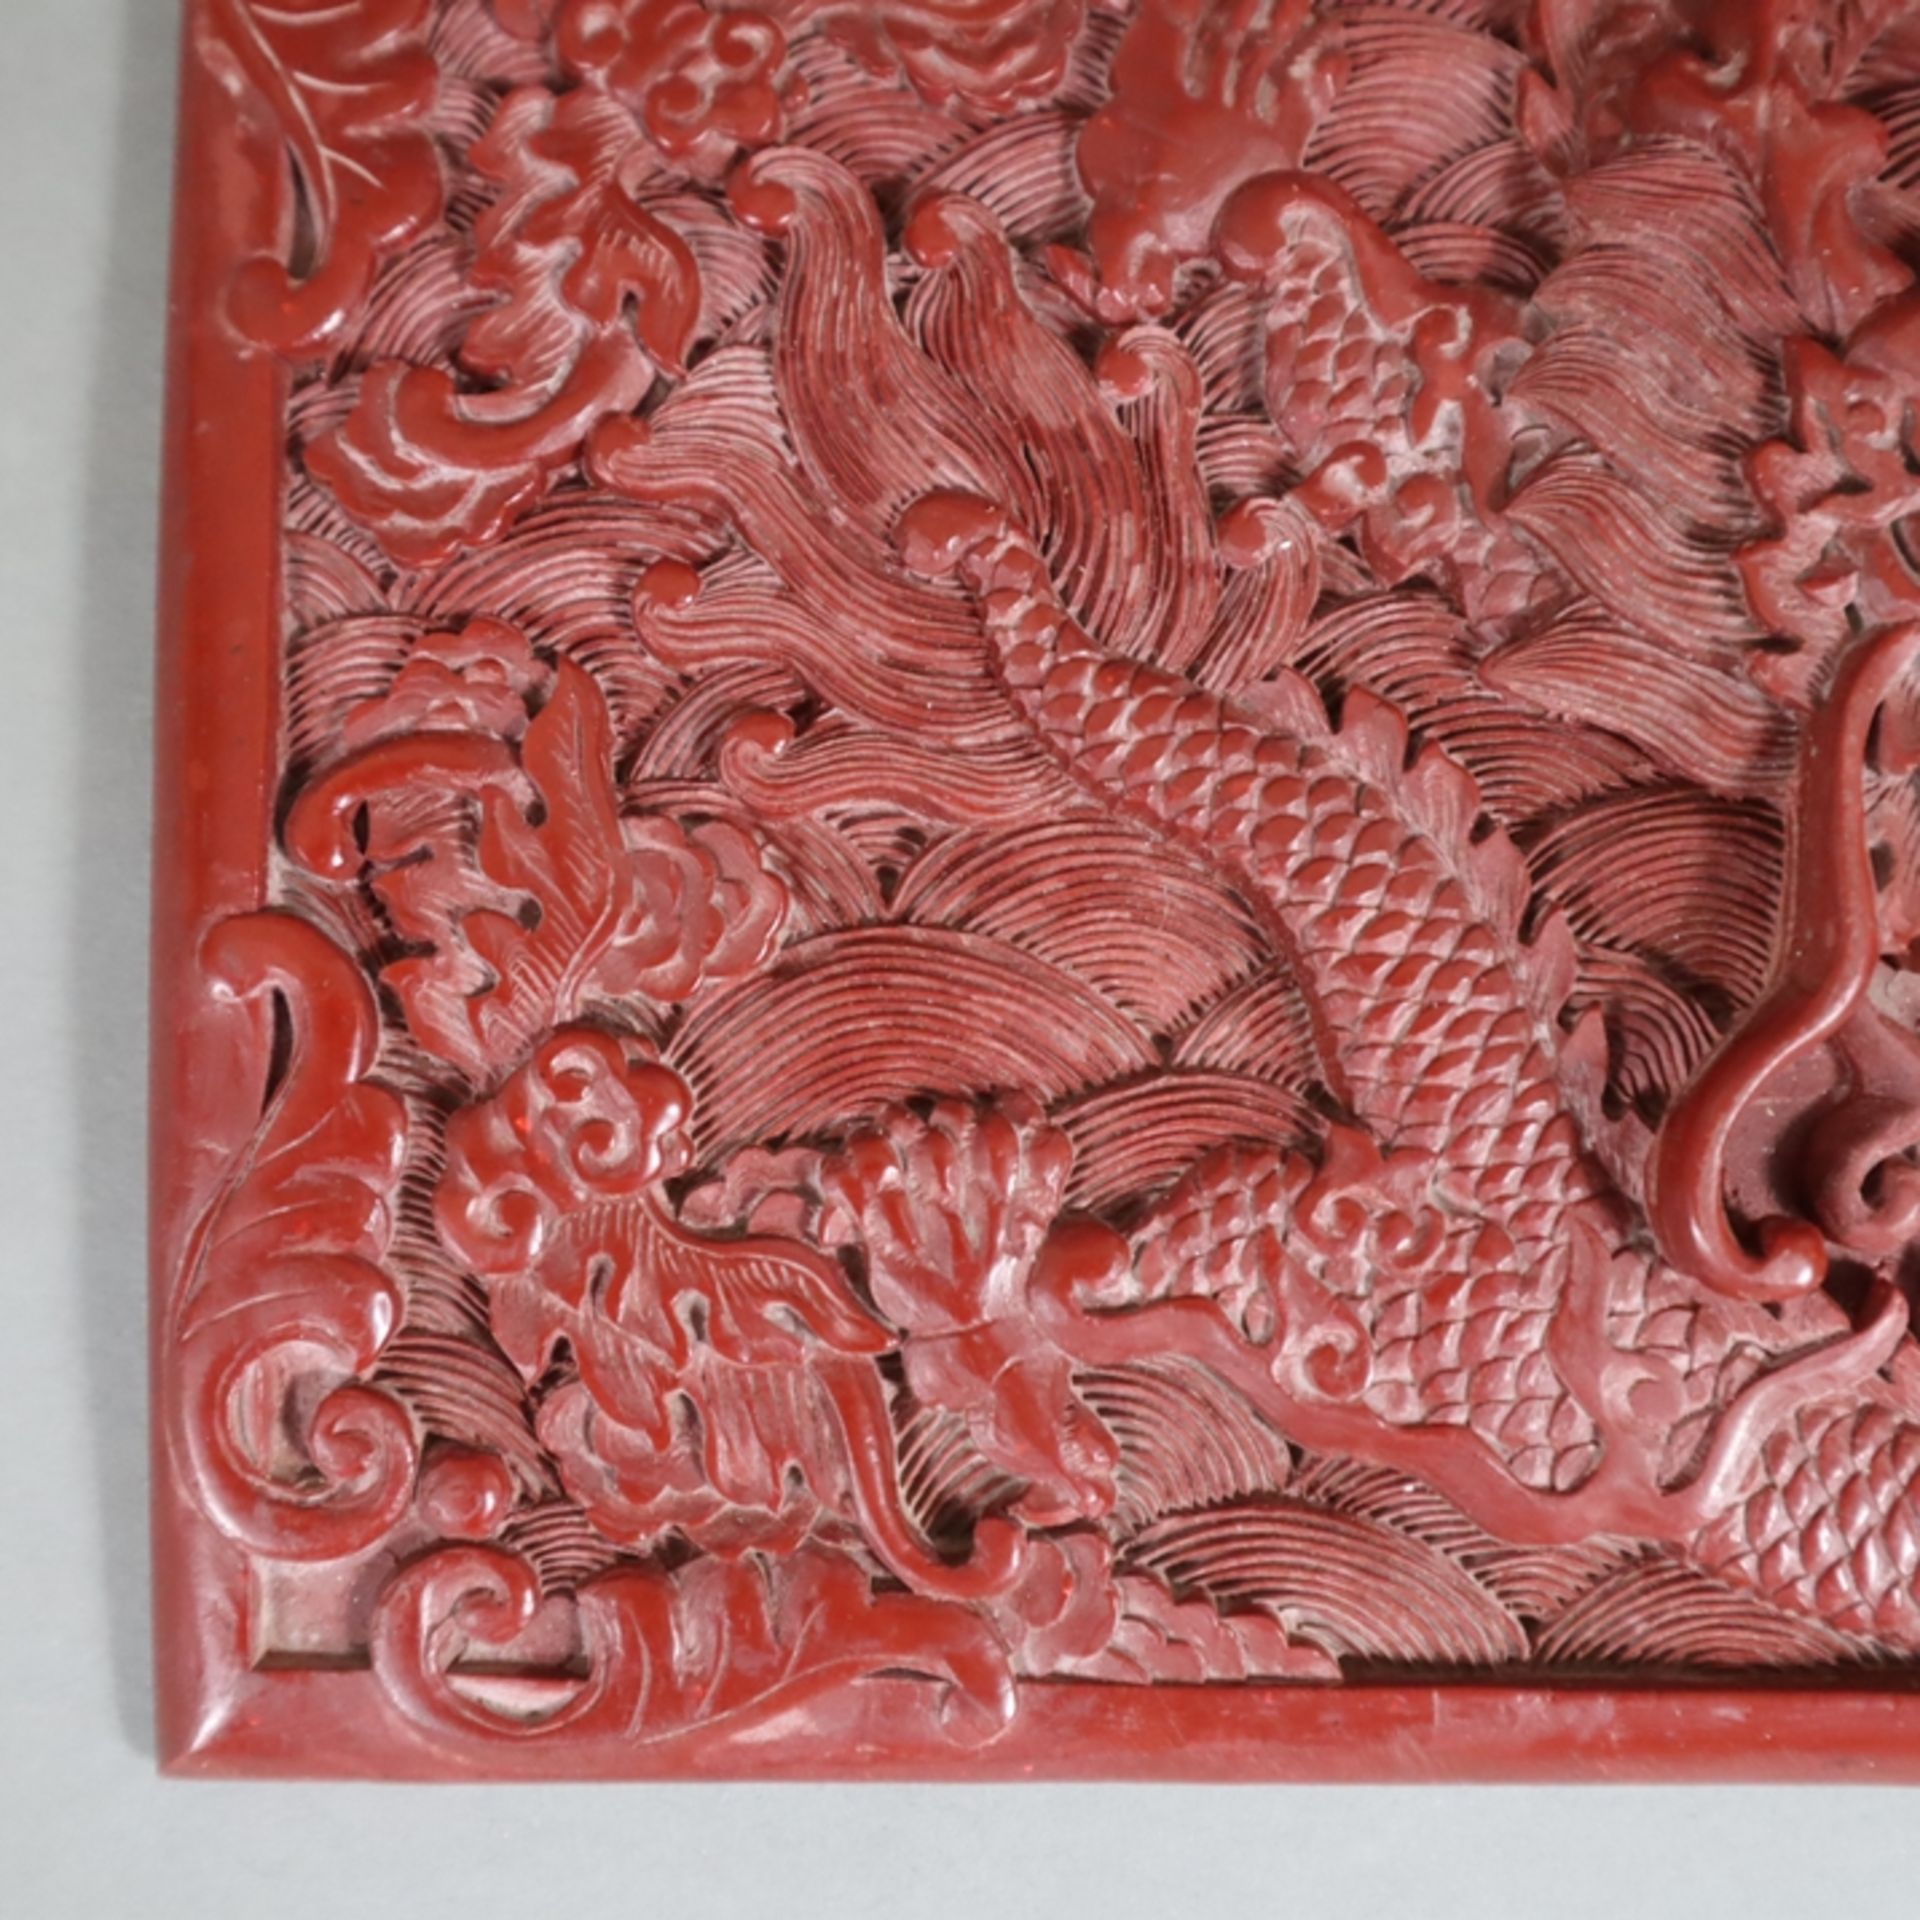 Große Lackplakette - China, roter Lack, rechteckig, in Reliefarbeit gewundener fünfklauiger Drache - Image 5 of 6